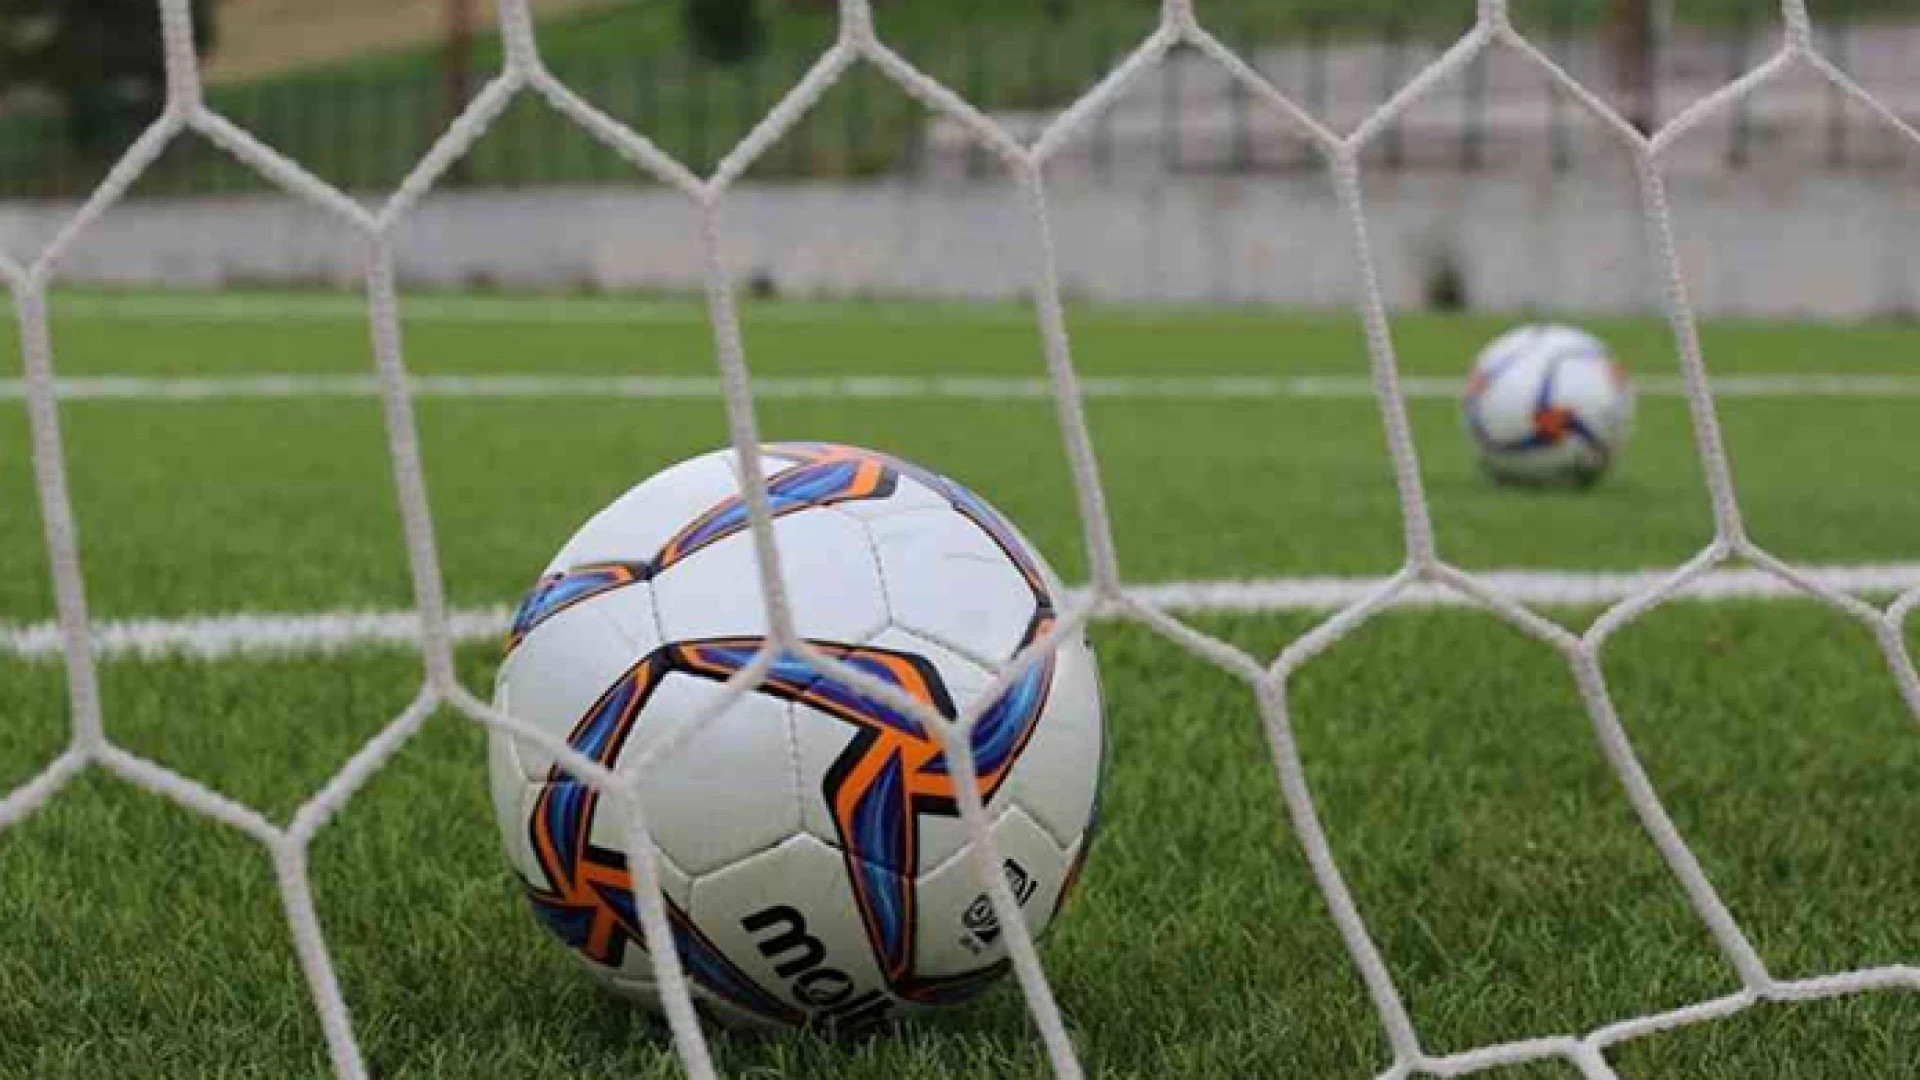 Le gare in programma nel fine settimana: Lega Pro girone C, Serie D girone F, Eccellenza e Promozione Molise